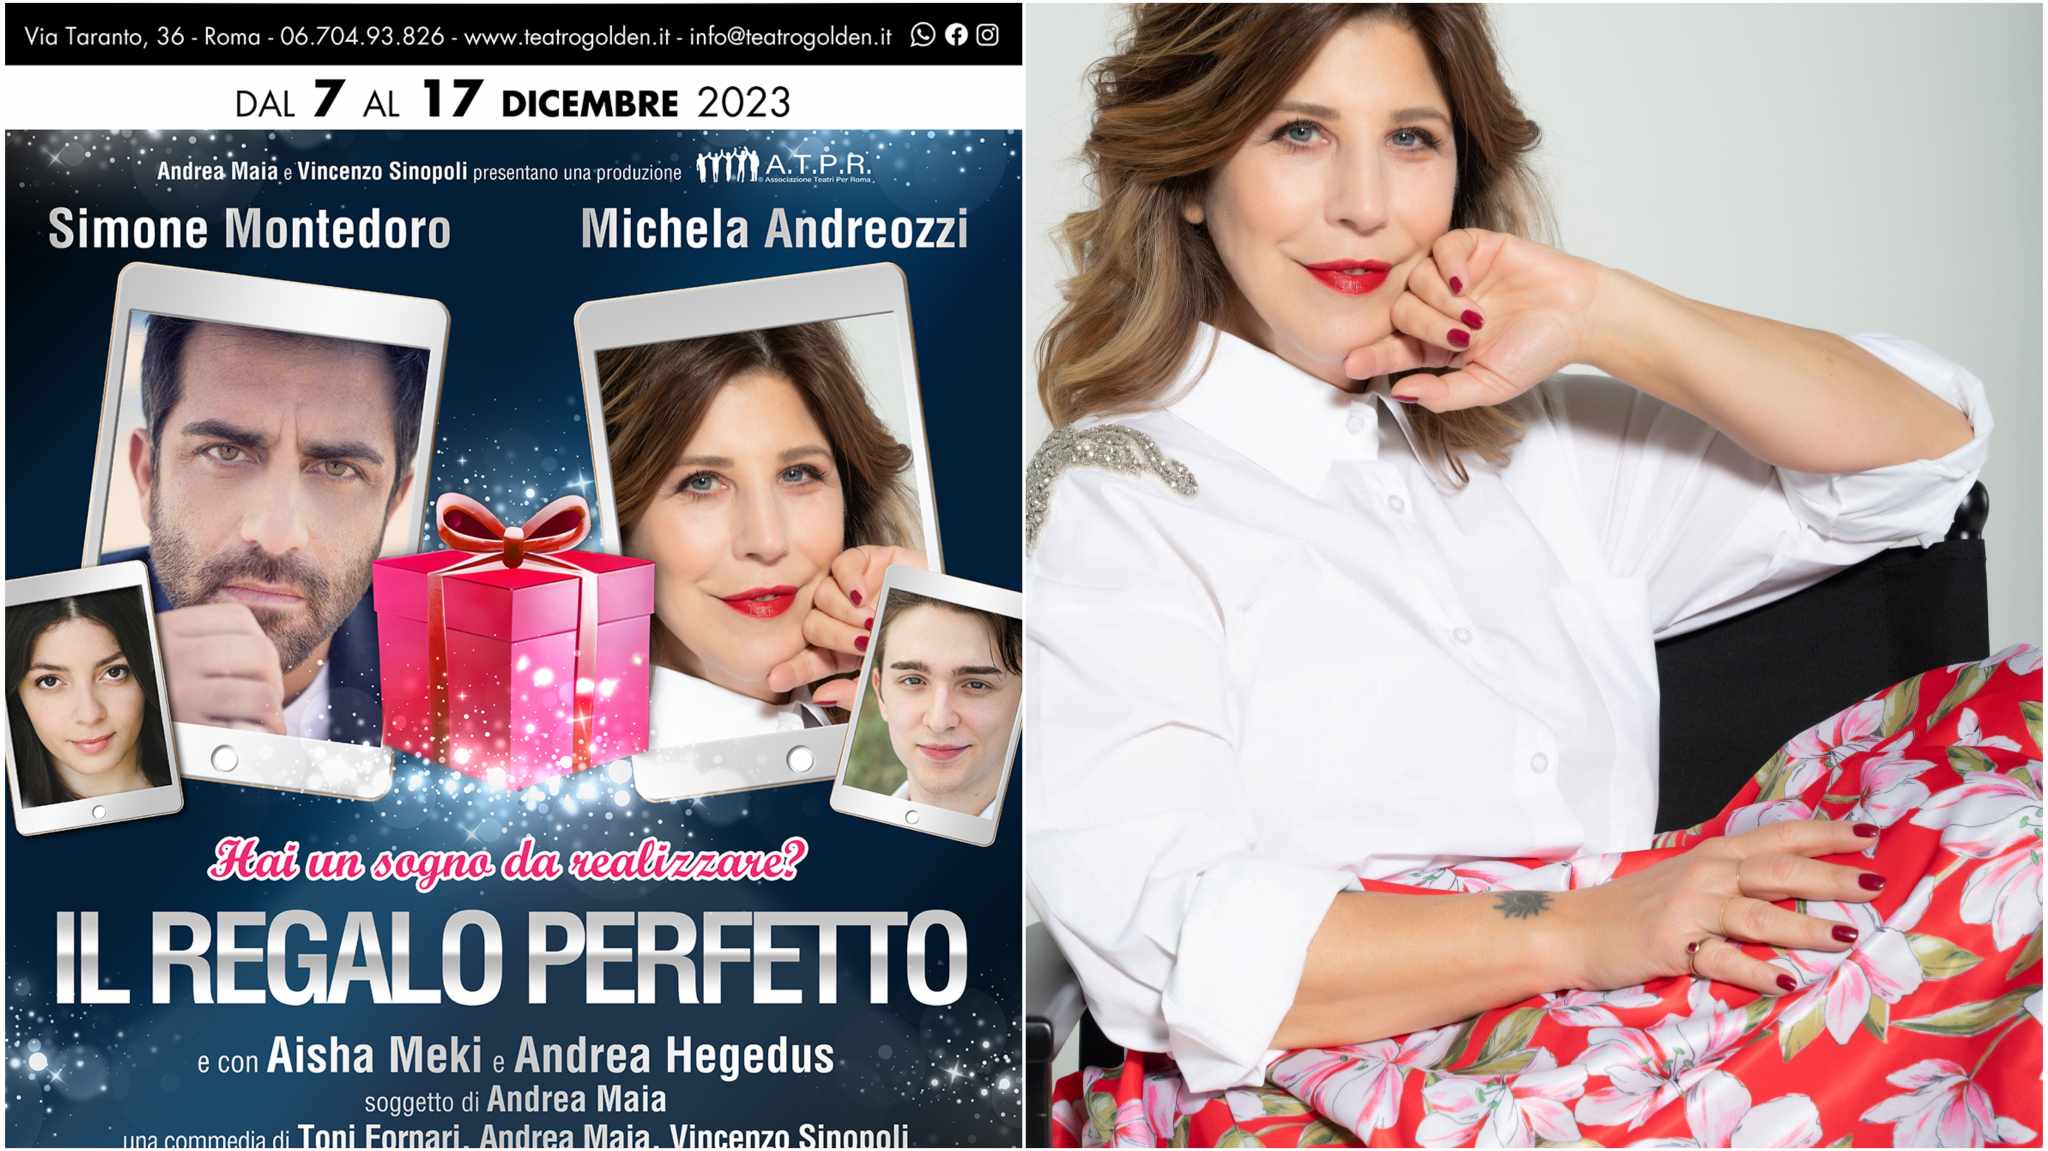 Il Regalo Perfetto: al Teatro Golden lo spettacolo con Michela Andreozzi e Simone Montedoro